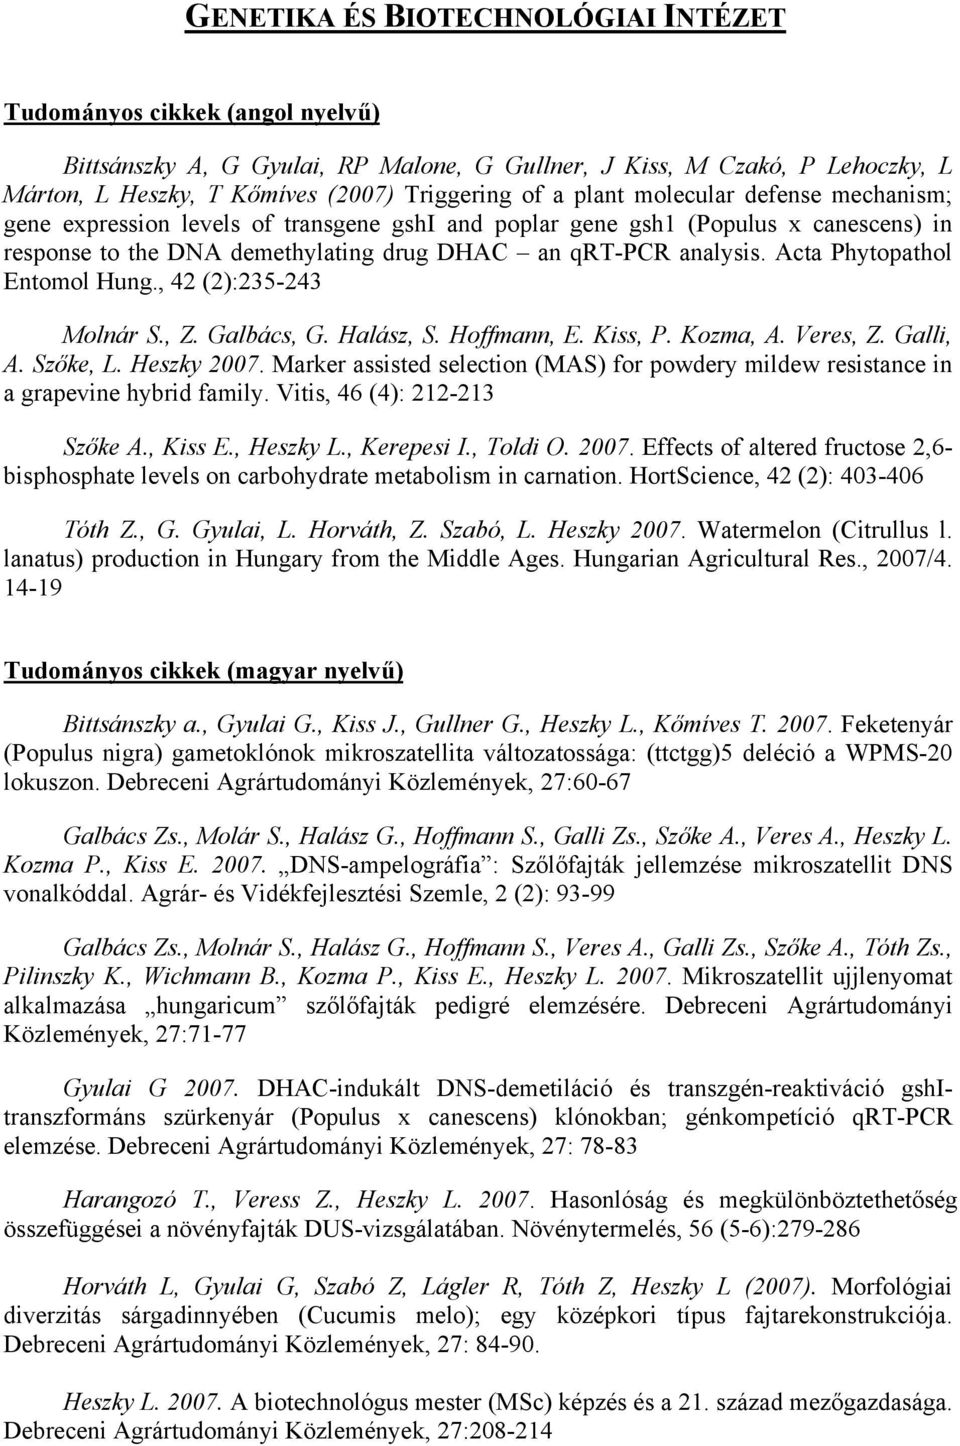 Acta Phytopathol Entomol Hung., 42 (2):235-243 Molnár S., Z. Galbács, G. Halász, S. Hoffmann, E. Kiss, P. Kozma, A. Veres, Z. Galli, A. Szőke, L. Heszky 2007.